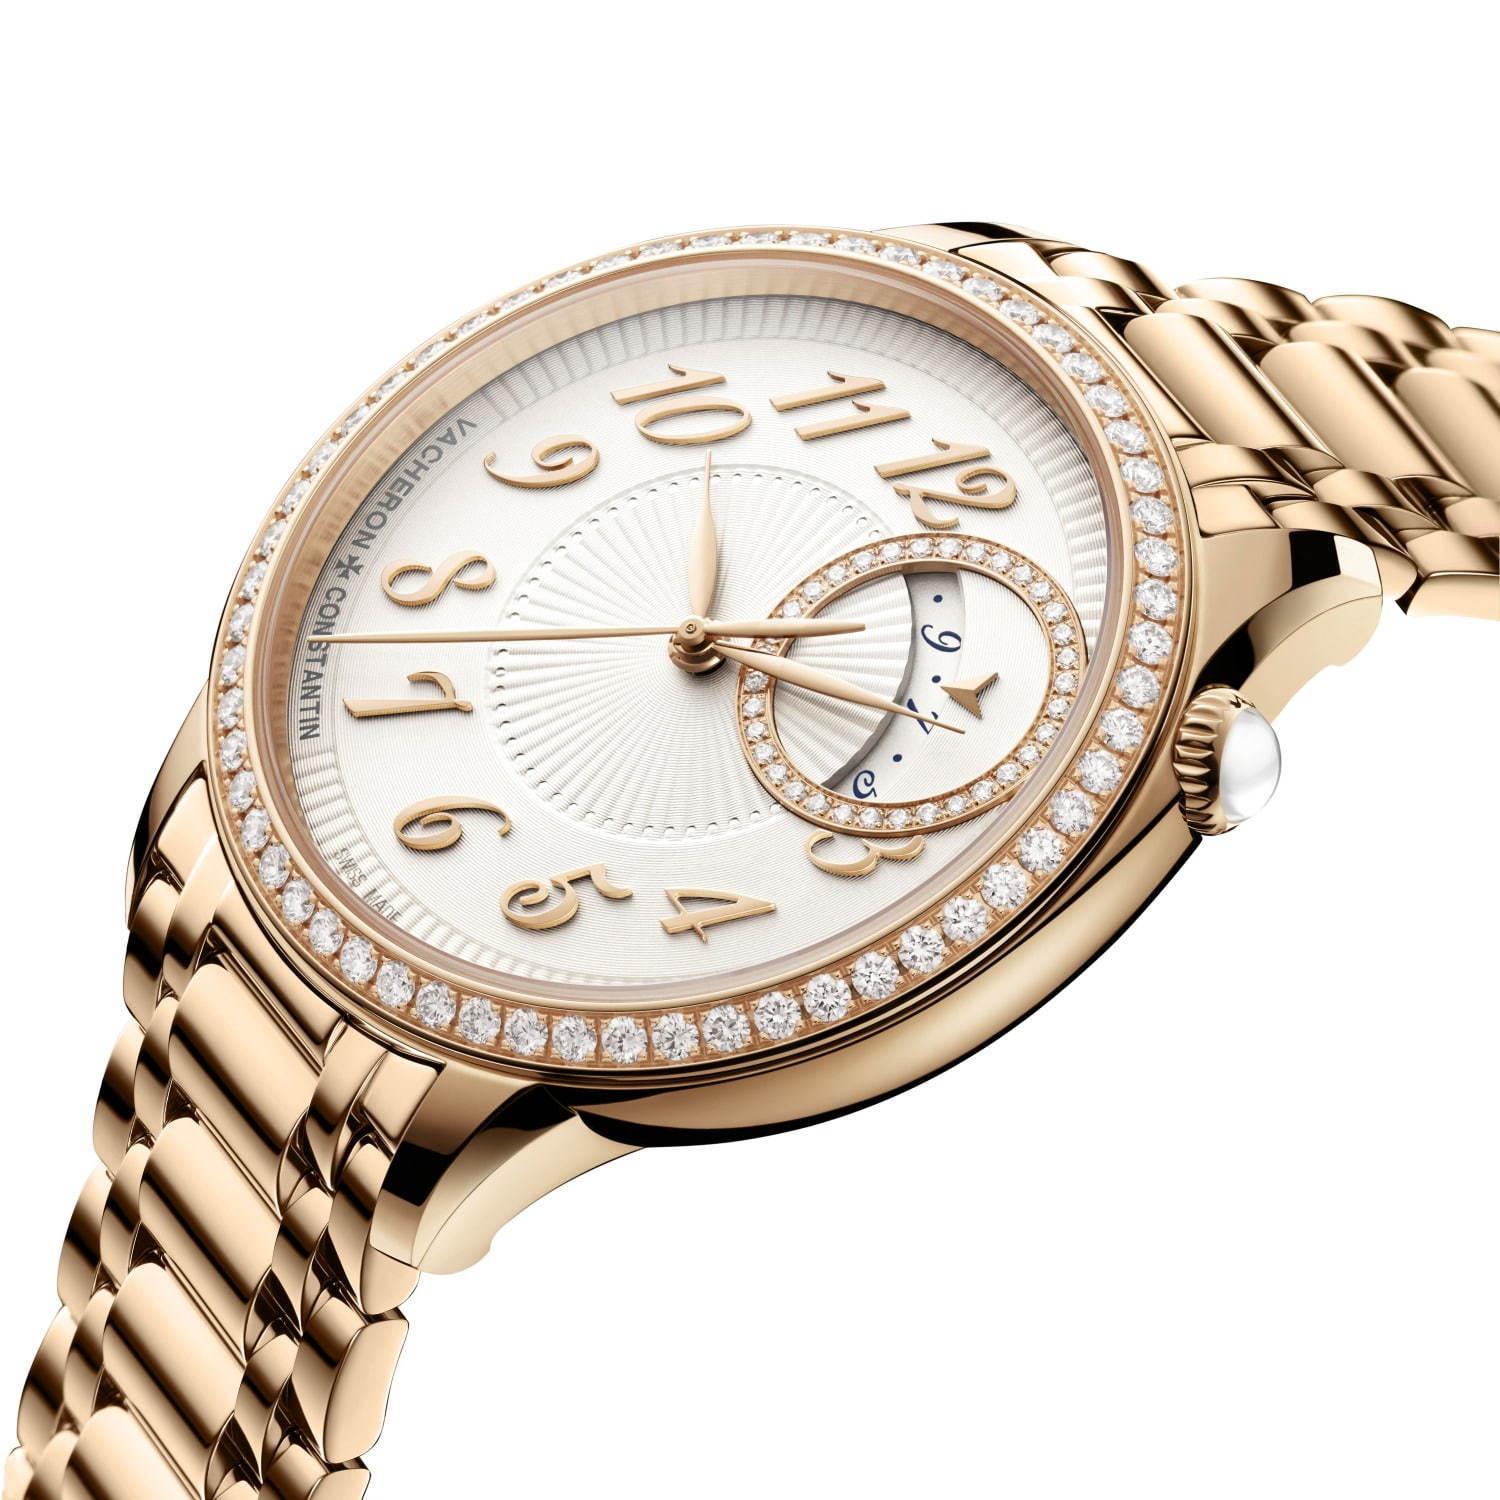 ヴァシュロン・コンスタンタンのレディース腕時計「エジェリー」新作、文字盤にプリーツ模様を施して コピー